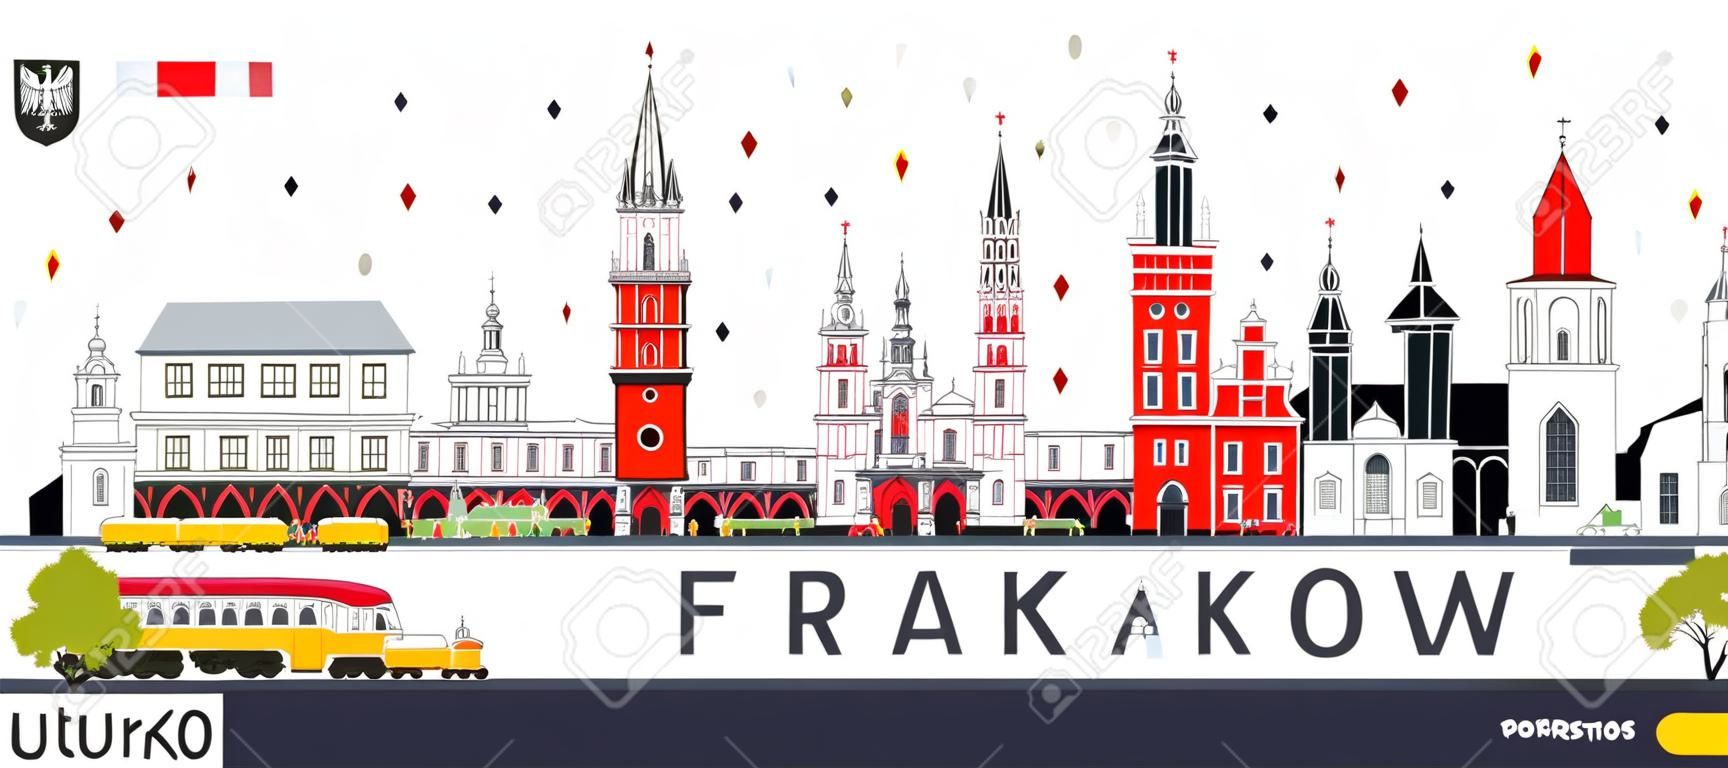 Krakau Polen City Skyline met kleur gebouwen geïsoleerd op wit. Vector Illustratie. Zakenreizen en toerisme Concept met historische architectuur. Krakau Cityscape met landmarks.